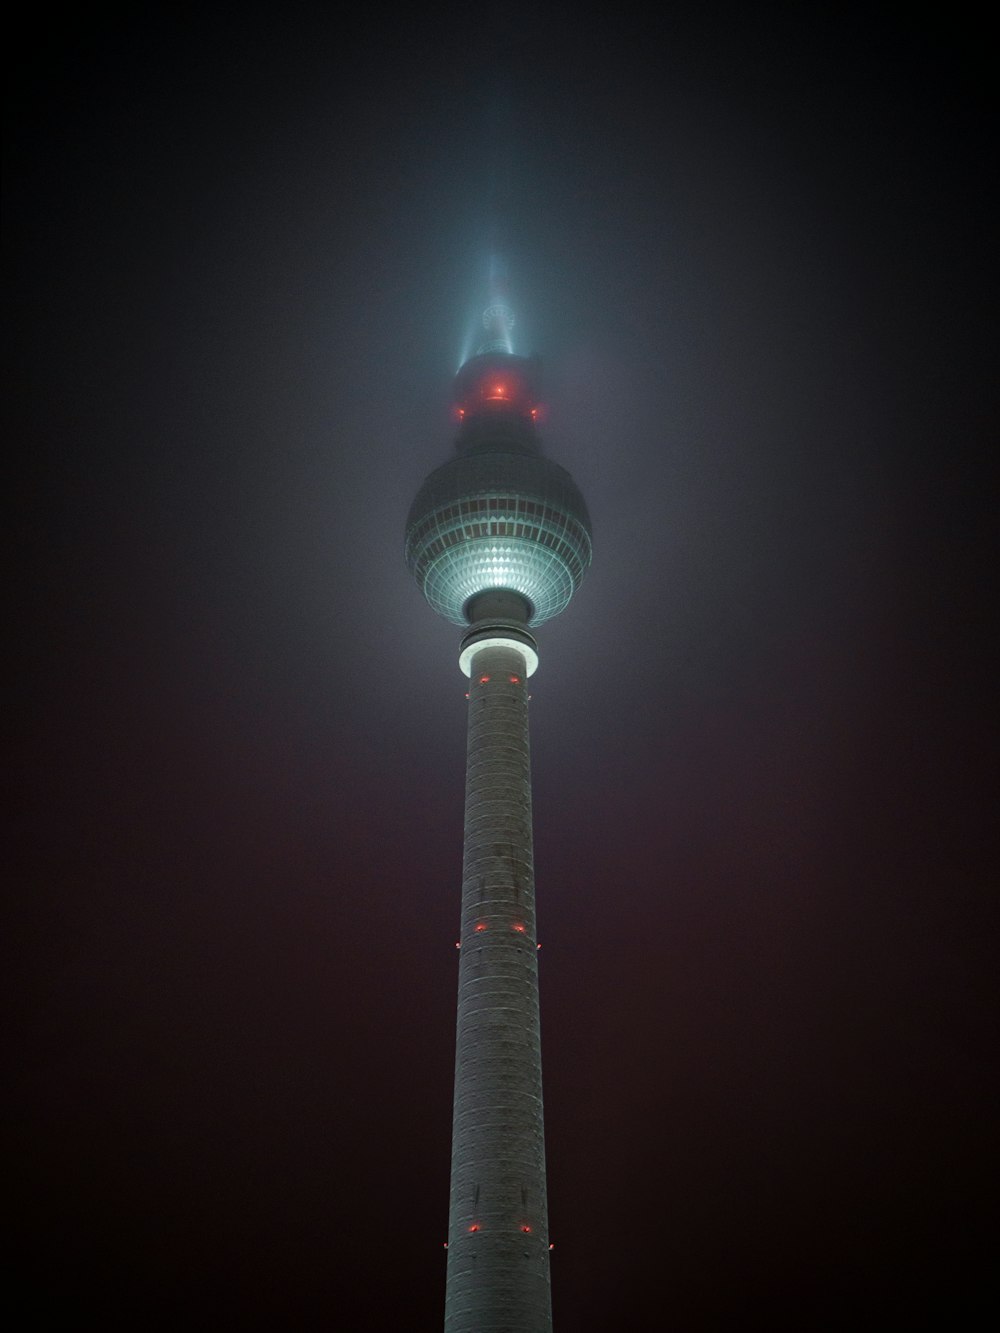 uma torre alta com uma luz vermelha no topo dela